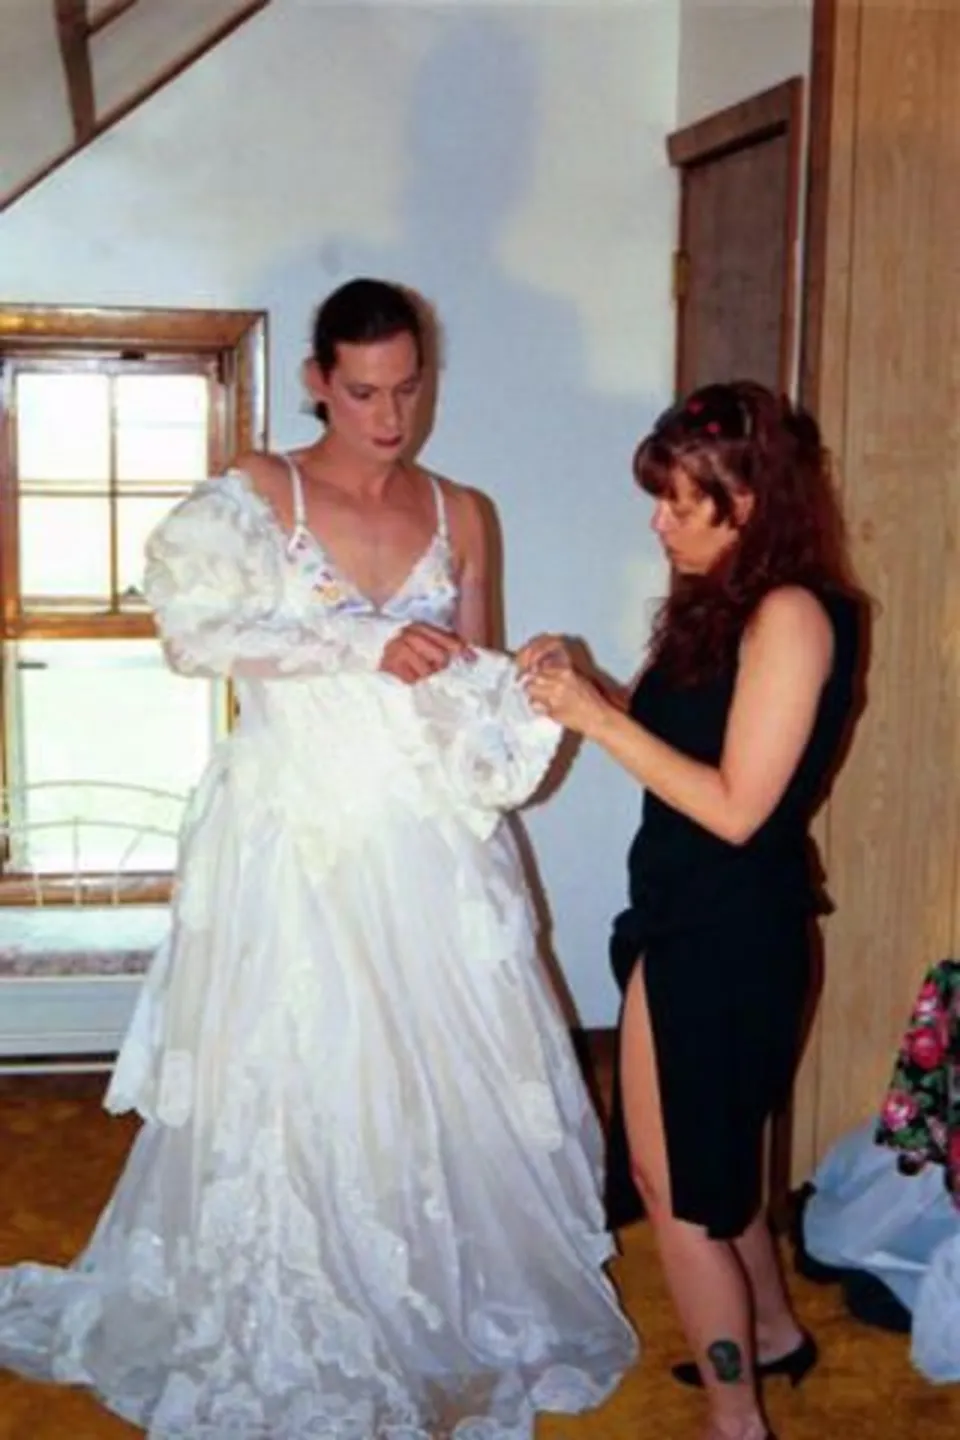 Мальчик в свадебном платье